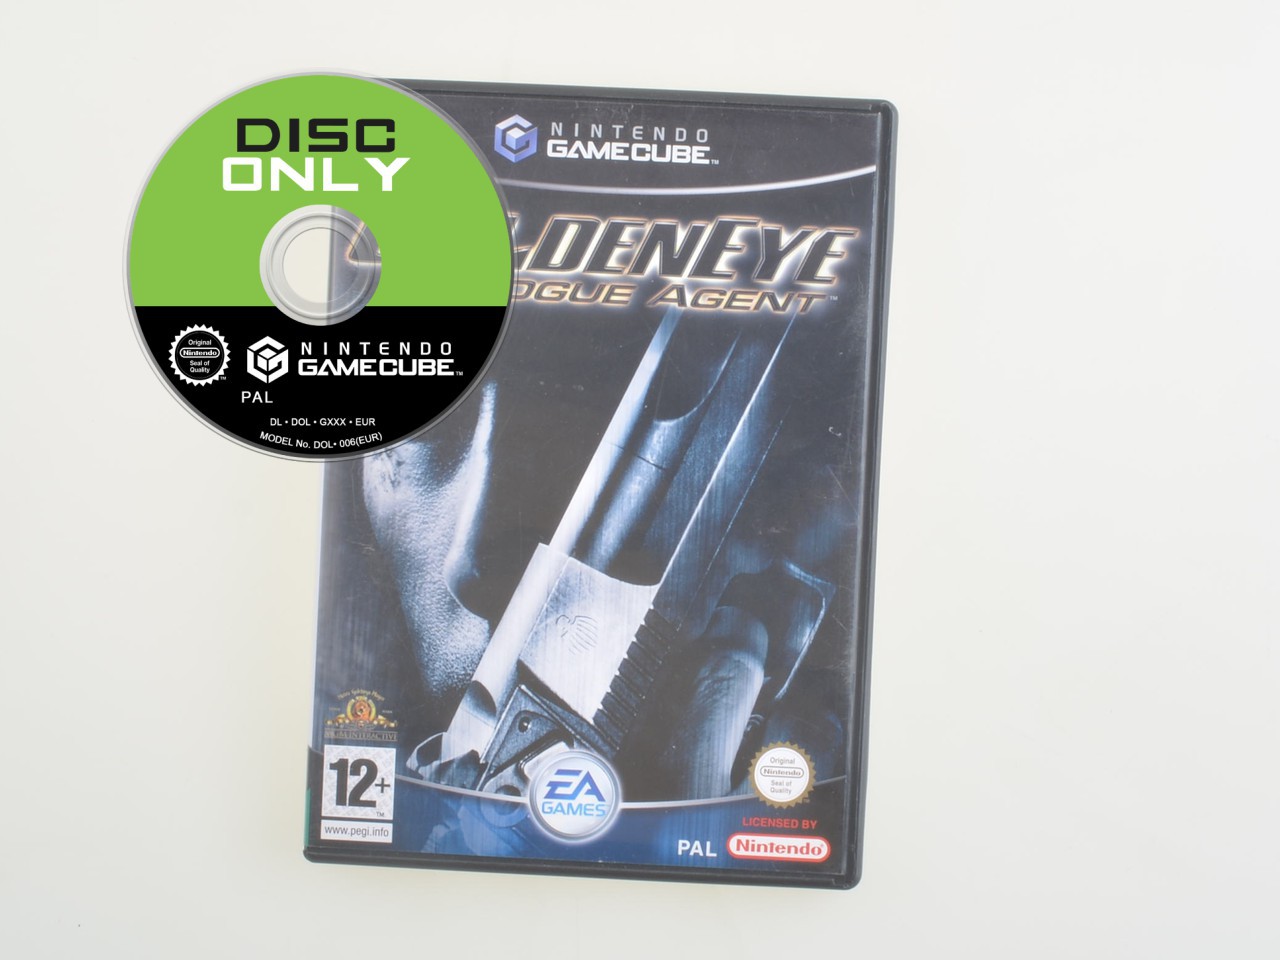 007 GoldenEye Rogue Agent - Disc Only Kopen | Gamecube Games